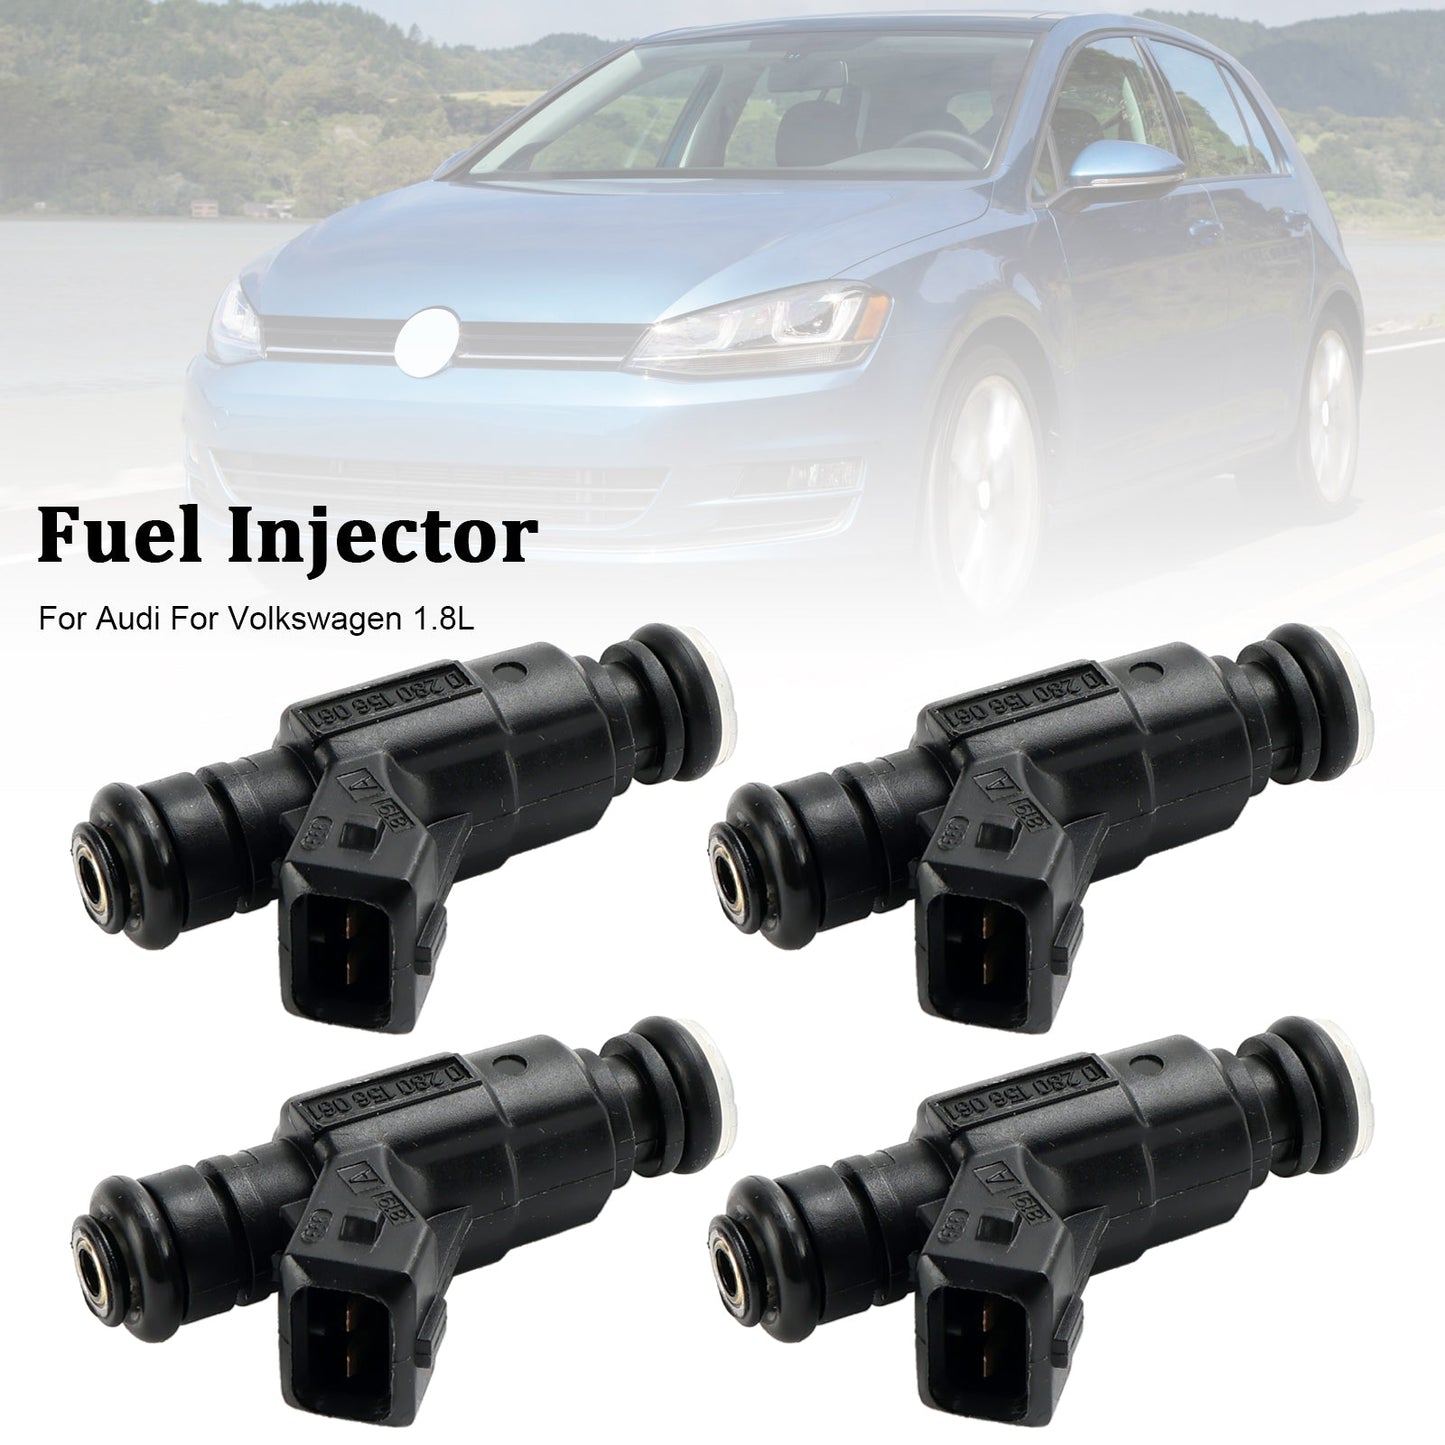 4PCS Fuel Injector 0280156061 Fit Audi Fit Volkswagen 1.8L 852-12184